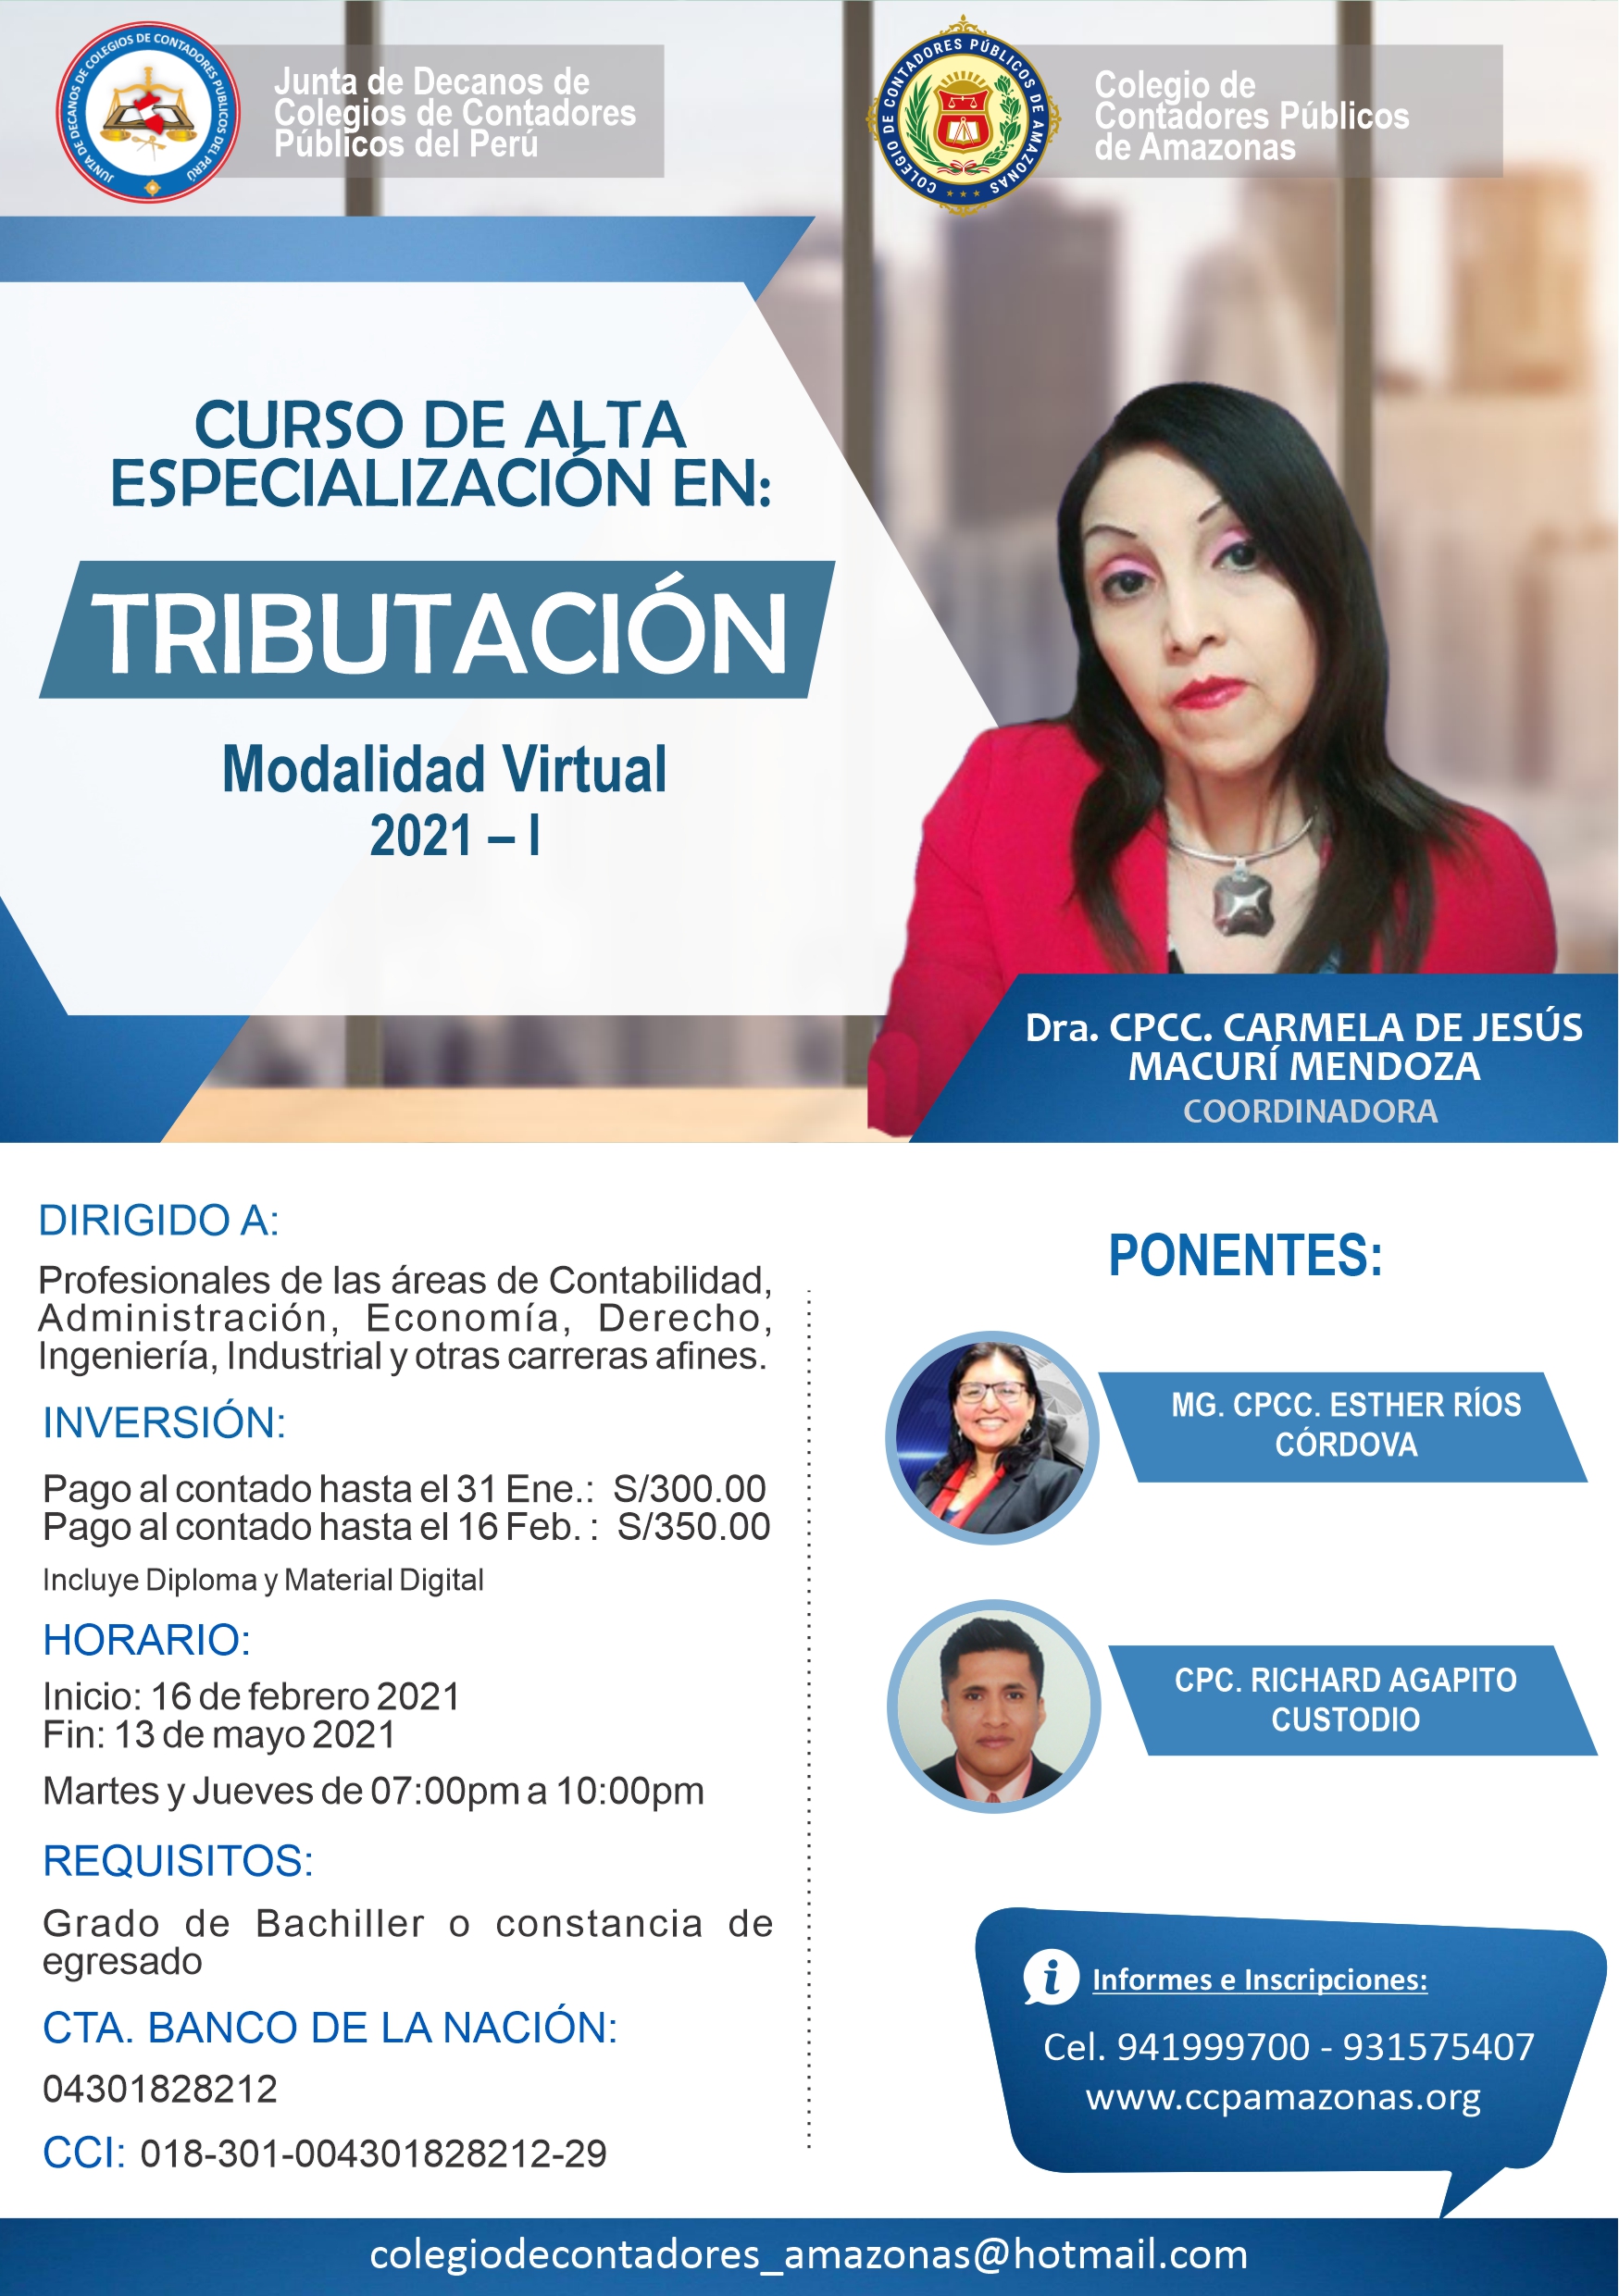 Thumbnail for the post titled: CURSO DE ALTA ESPECIALIZACIÓN EN: TRIBUTACIÓN 2021-I